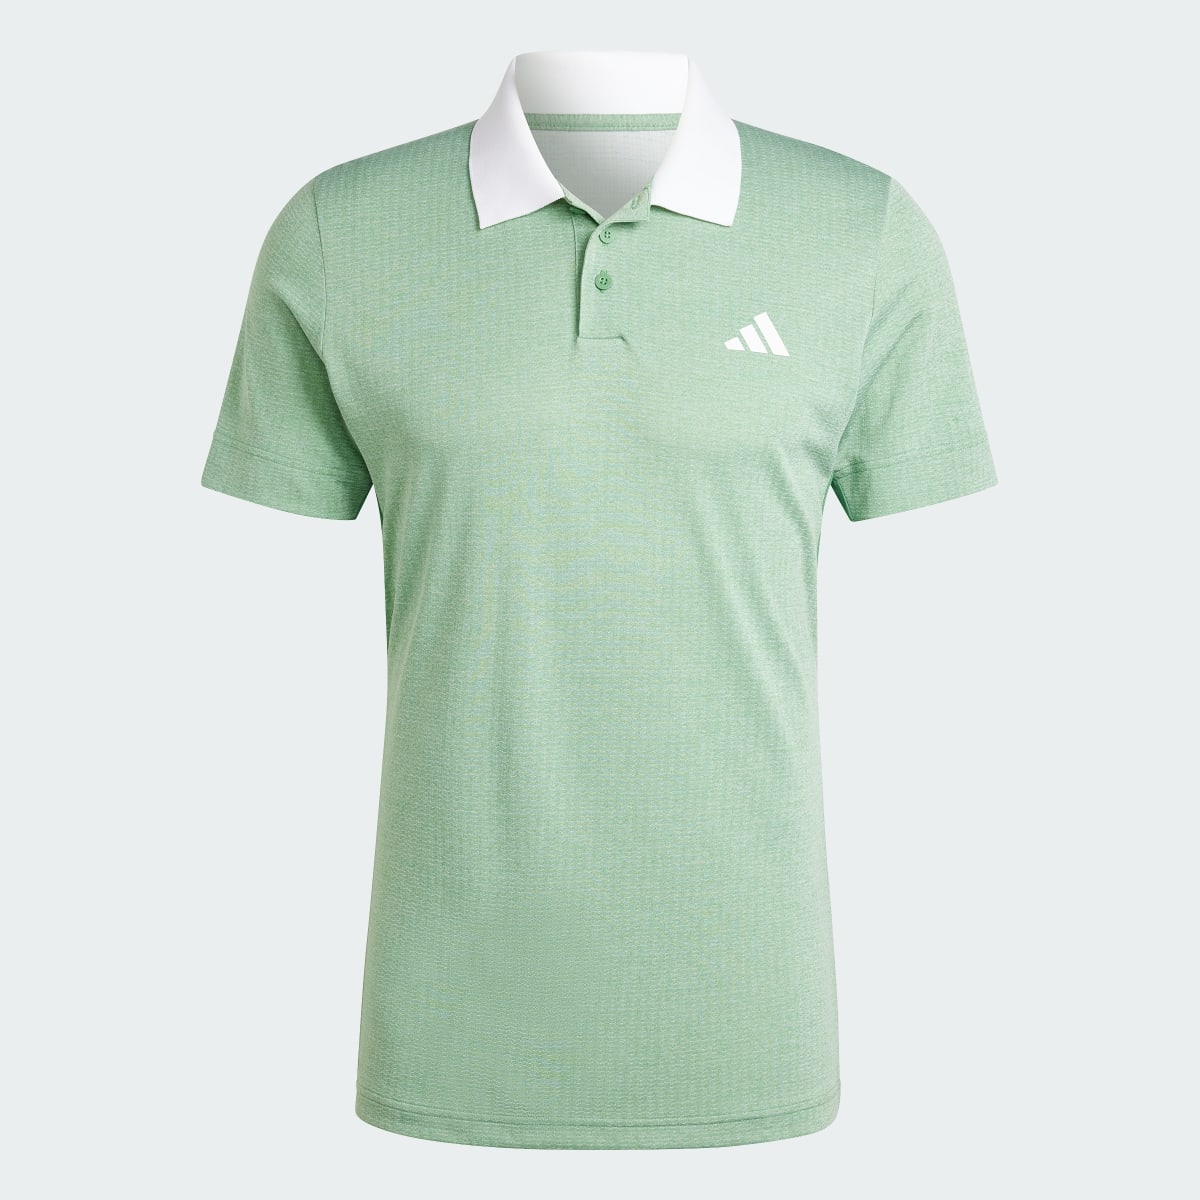 Adidas Tennis FreeLift Poloshirt. 5